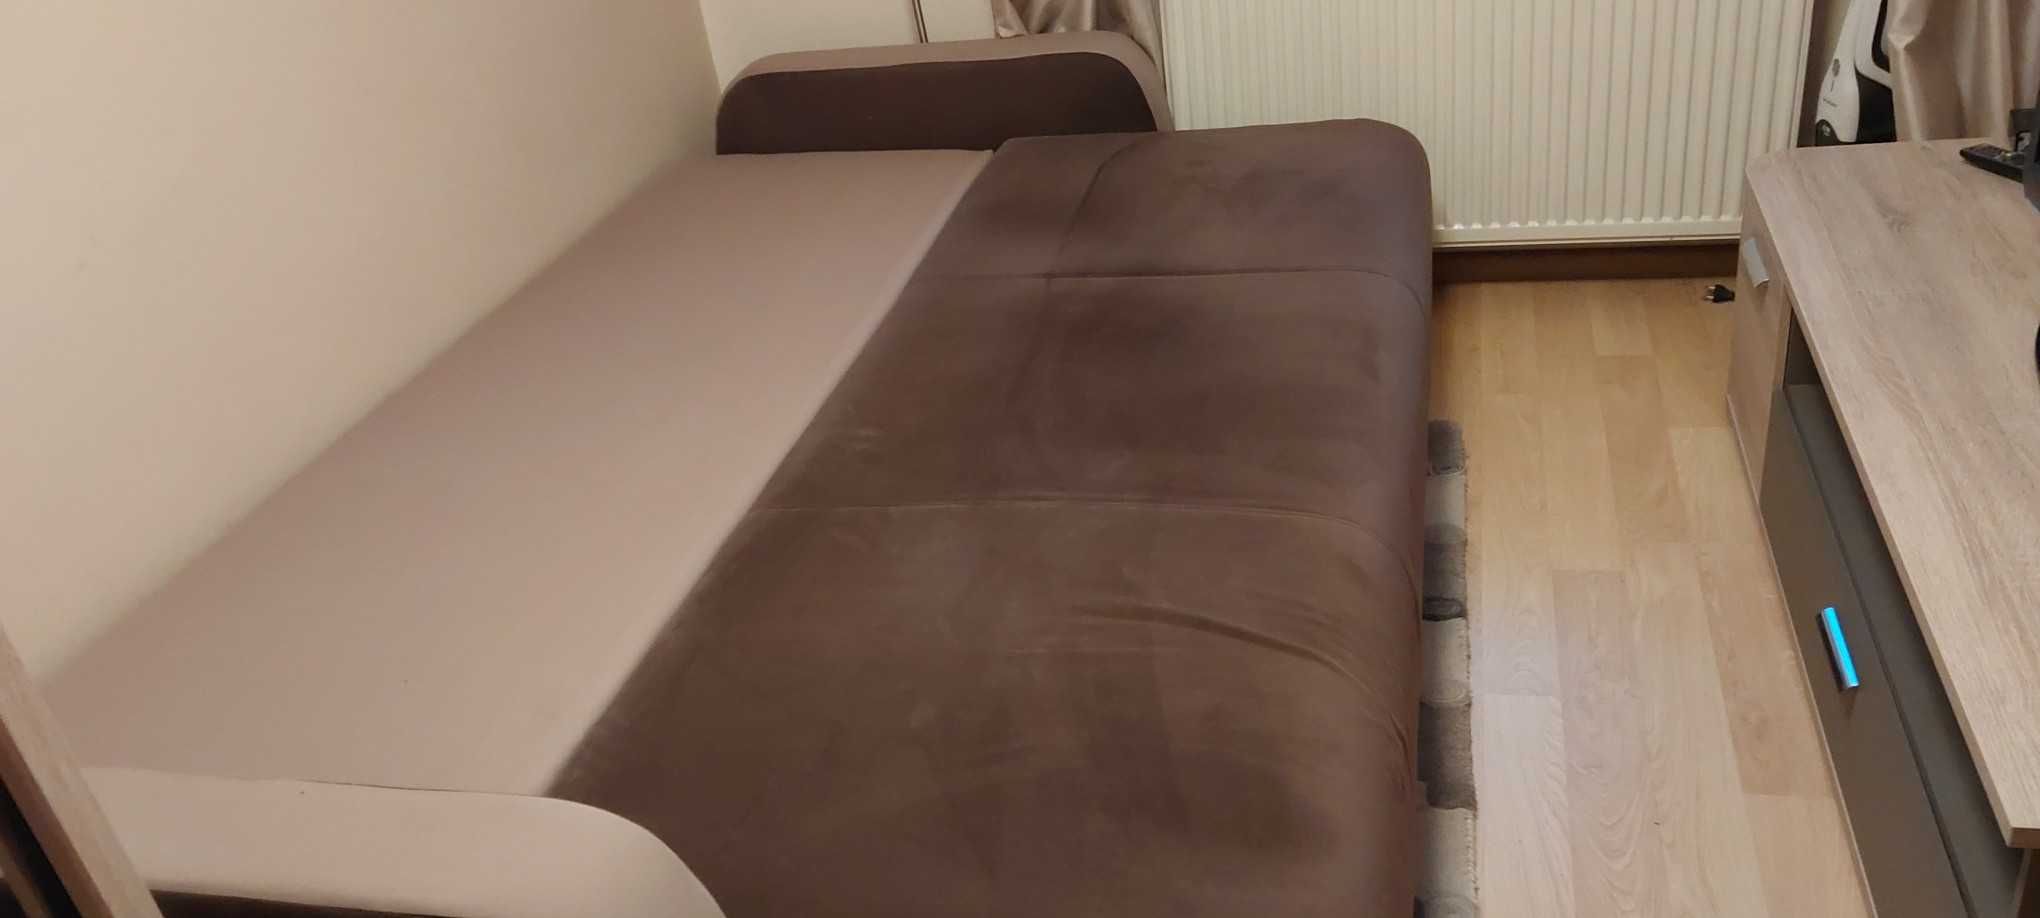 sofa z poduszkami kolor brąz i beż